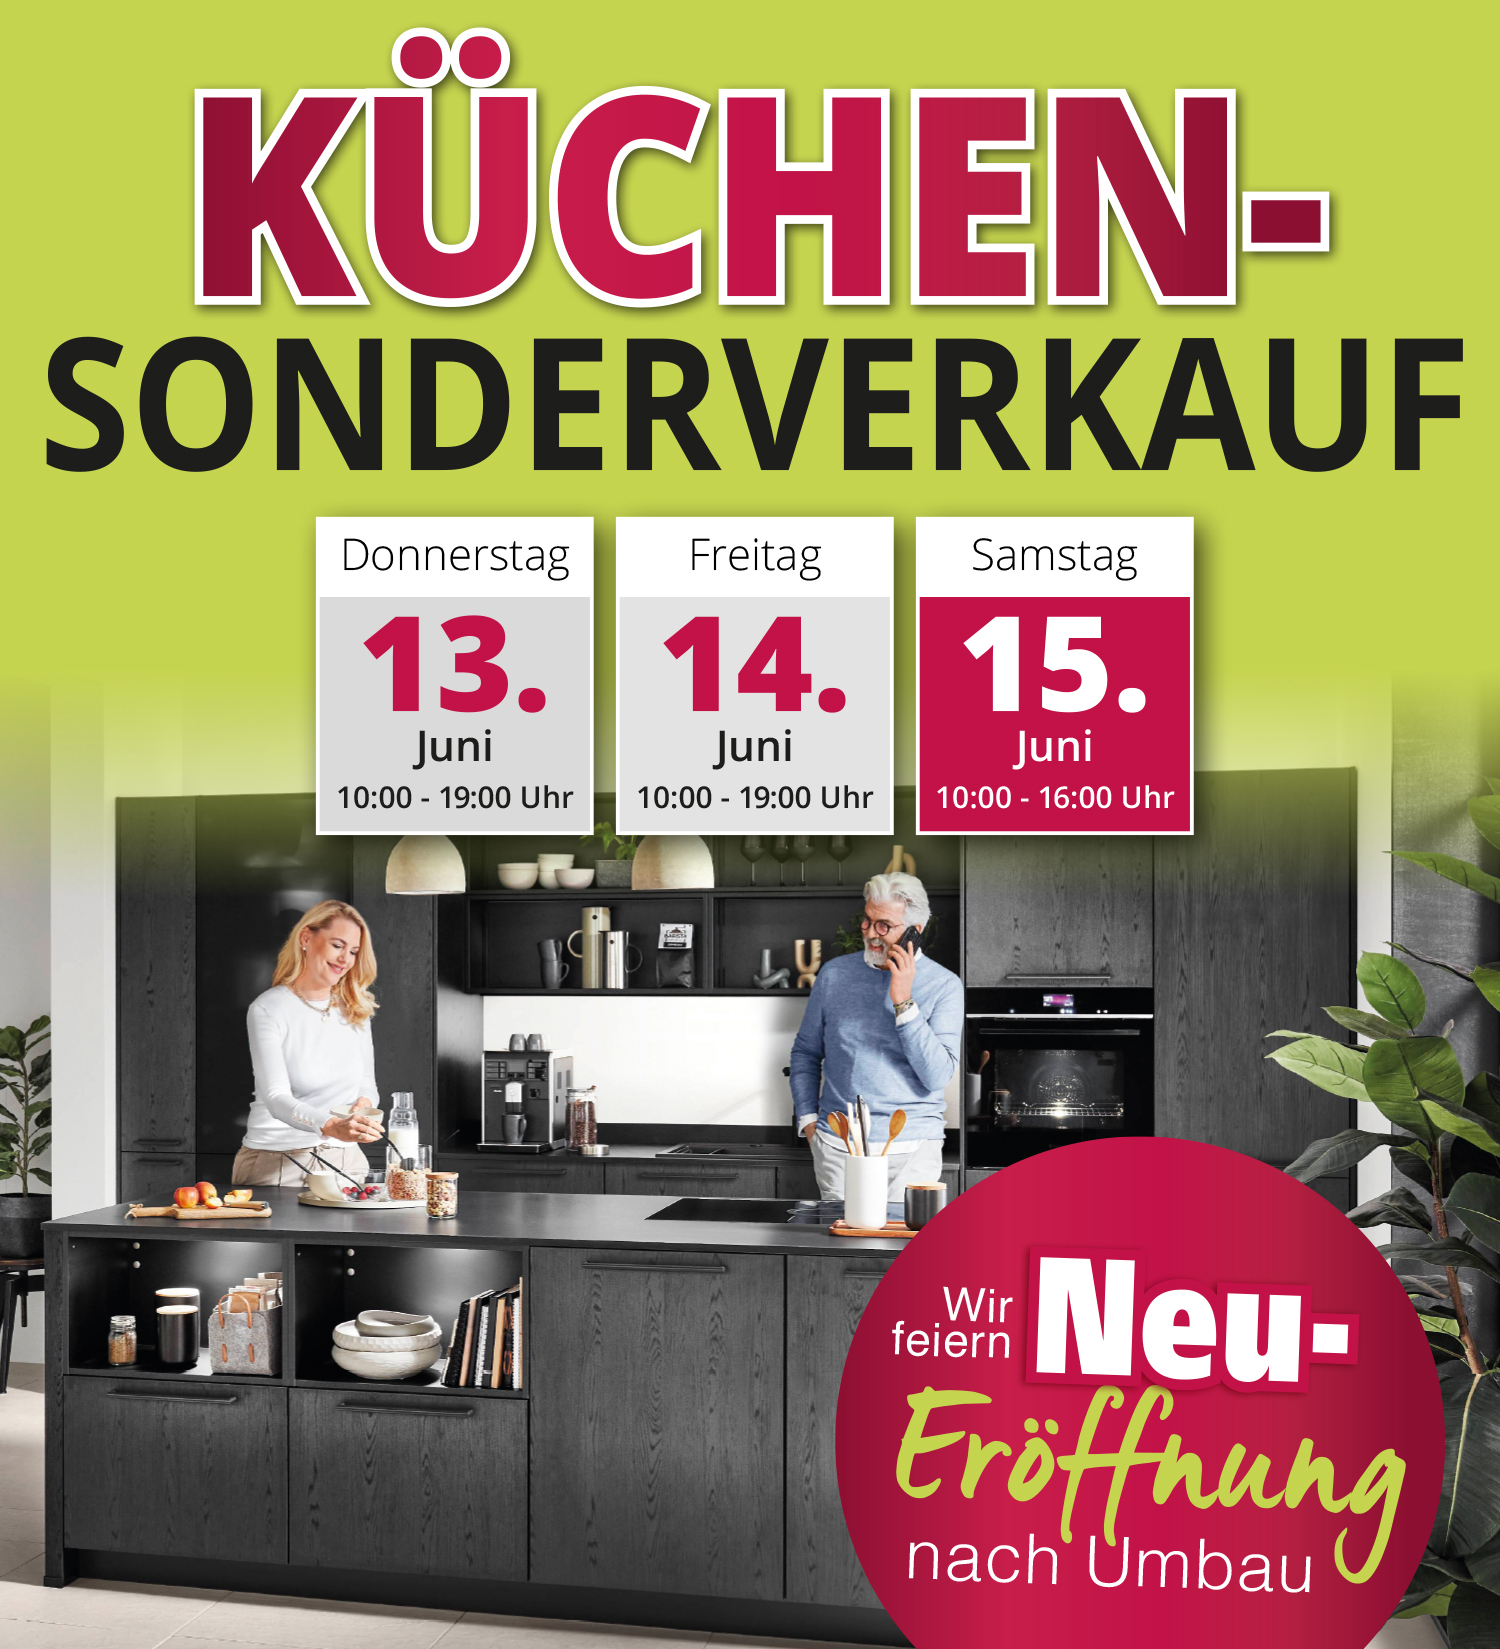 Küchen-Sonderverkauf wegen Neu-Eröffnung nach Umbau bei Möbel Urban in Bad Camberg. Nur vom 13. - 15. Juni